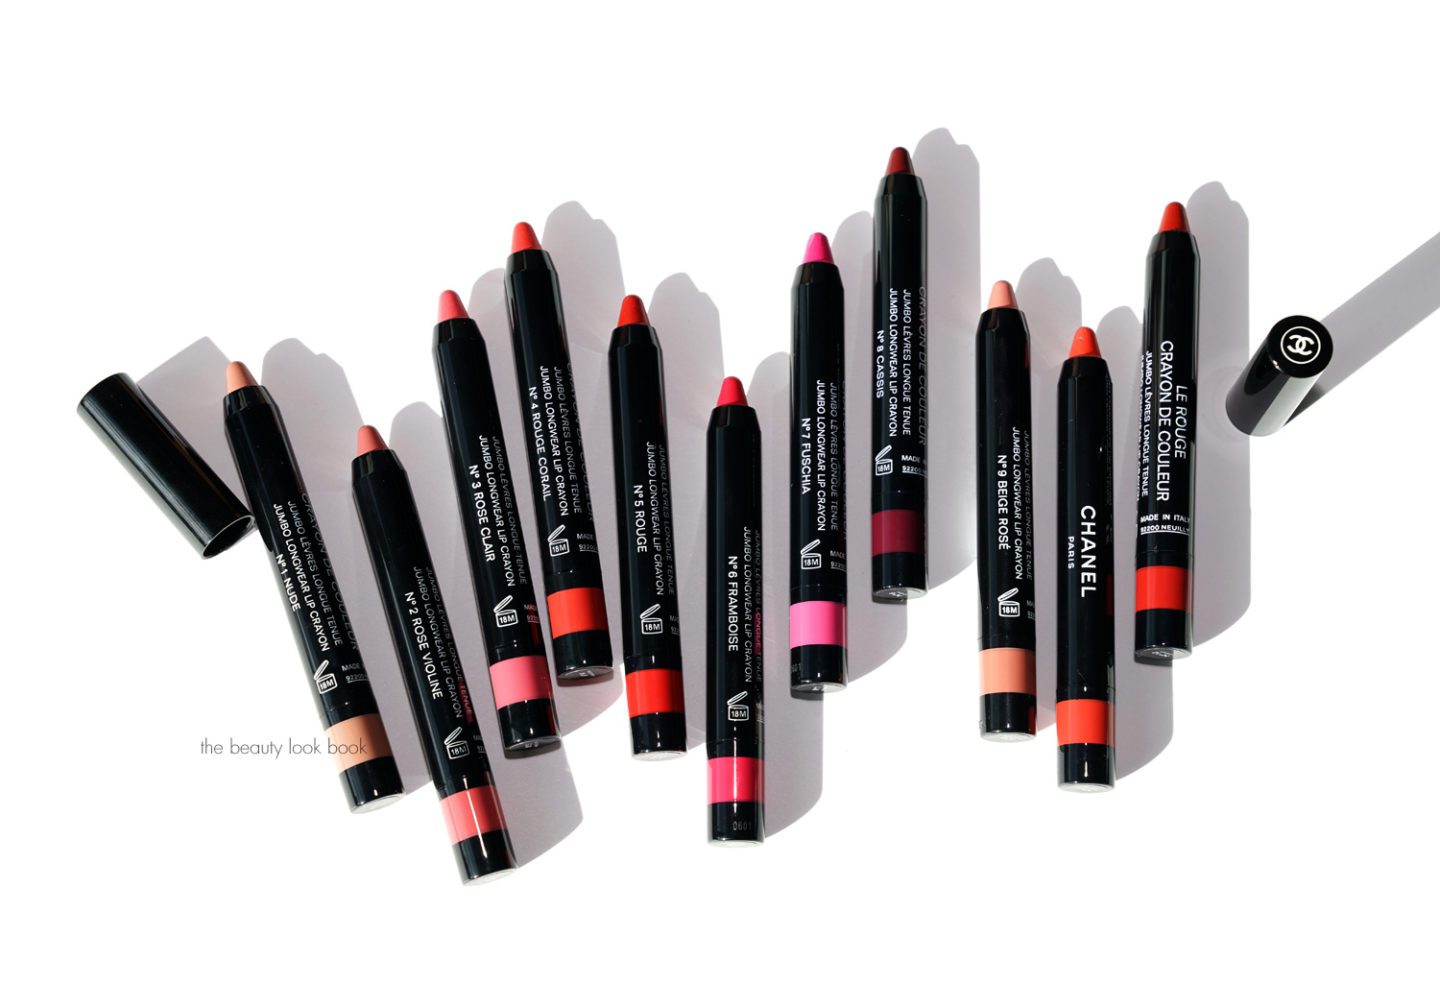 Chanel Le Rouge Crayon de Couleur Review via The Beauty Look Book